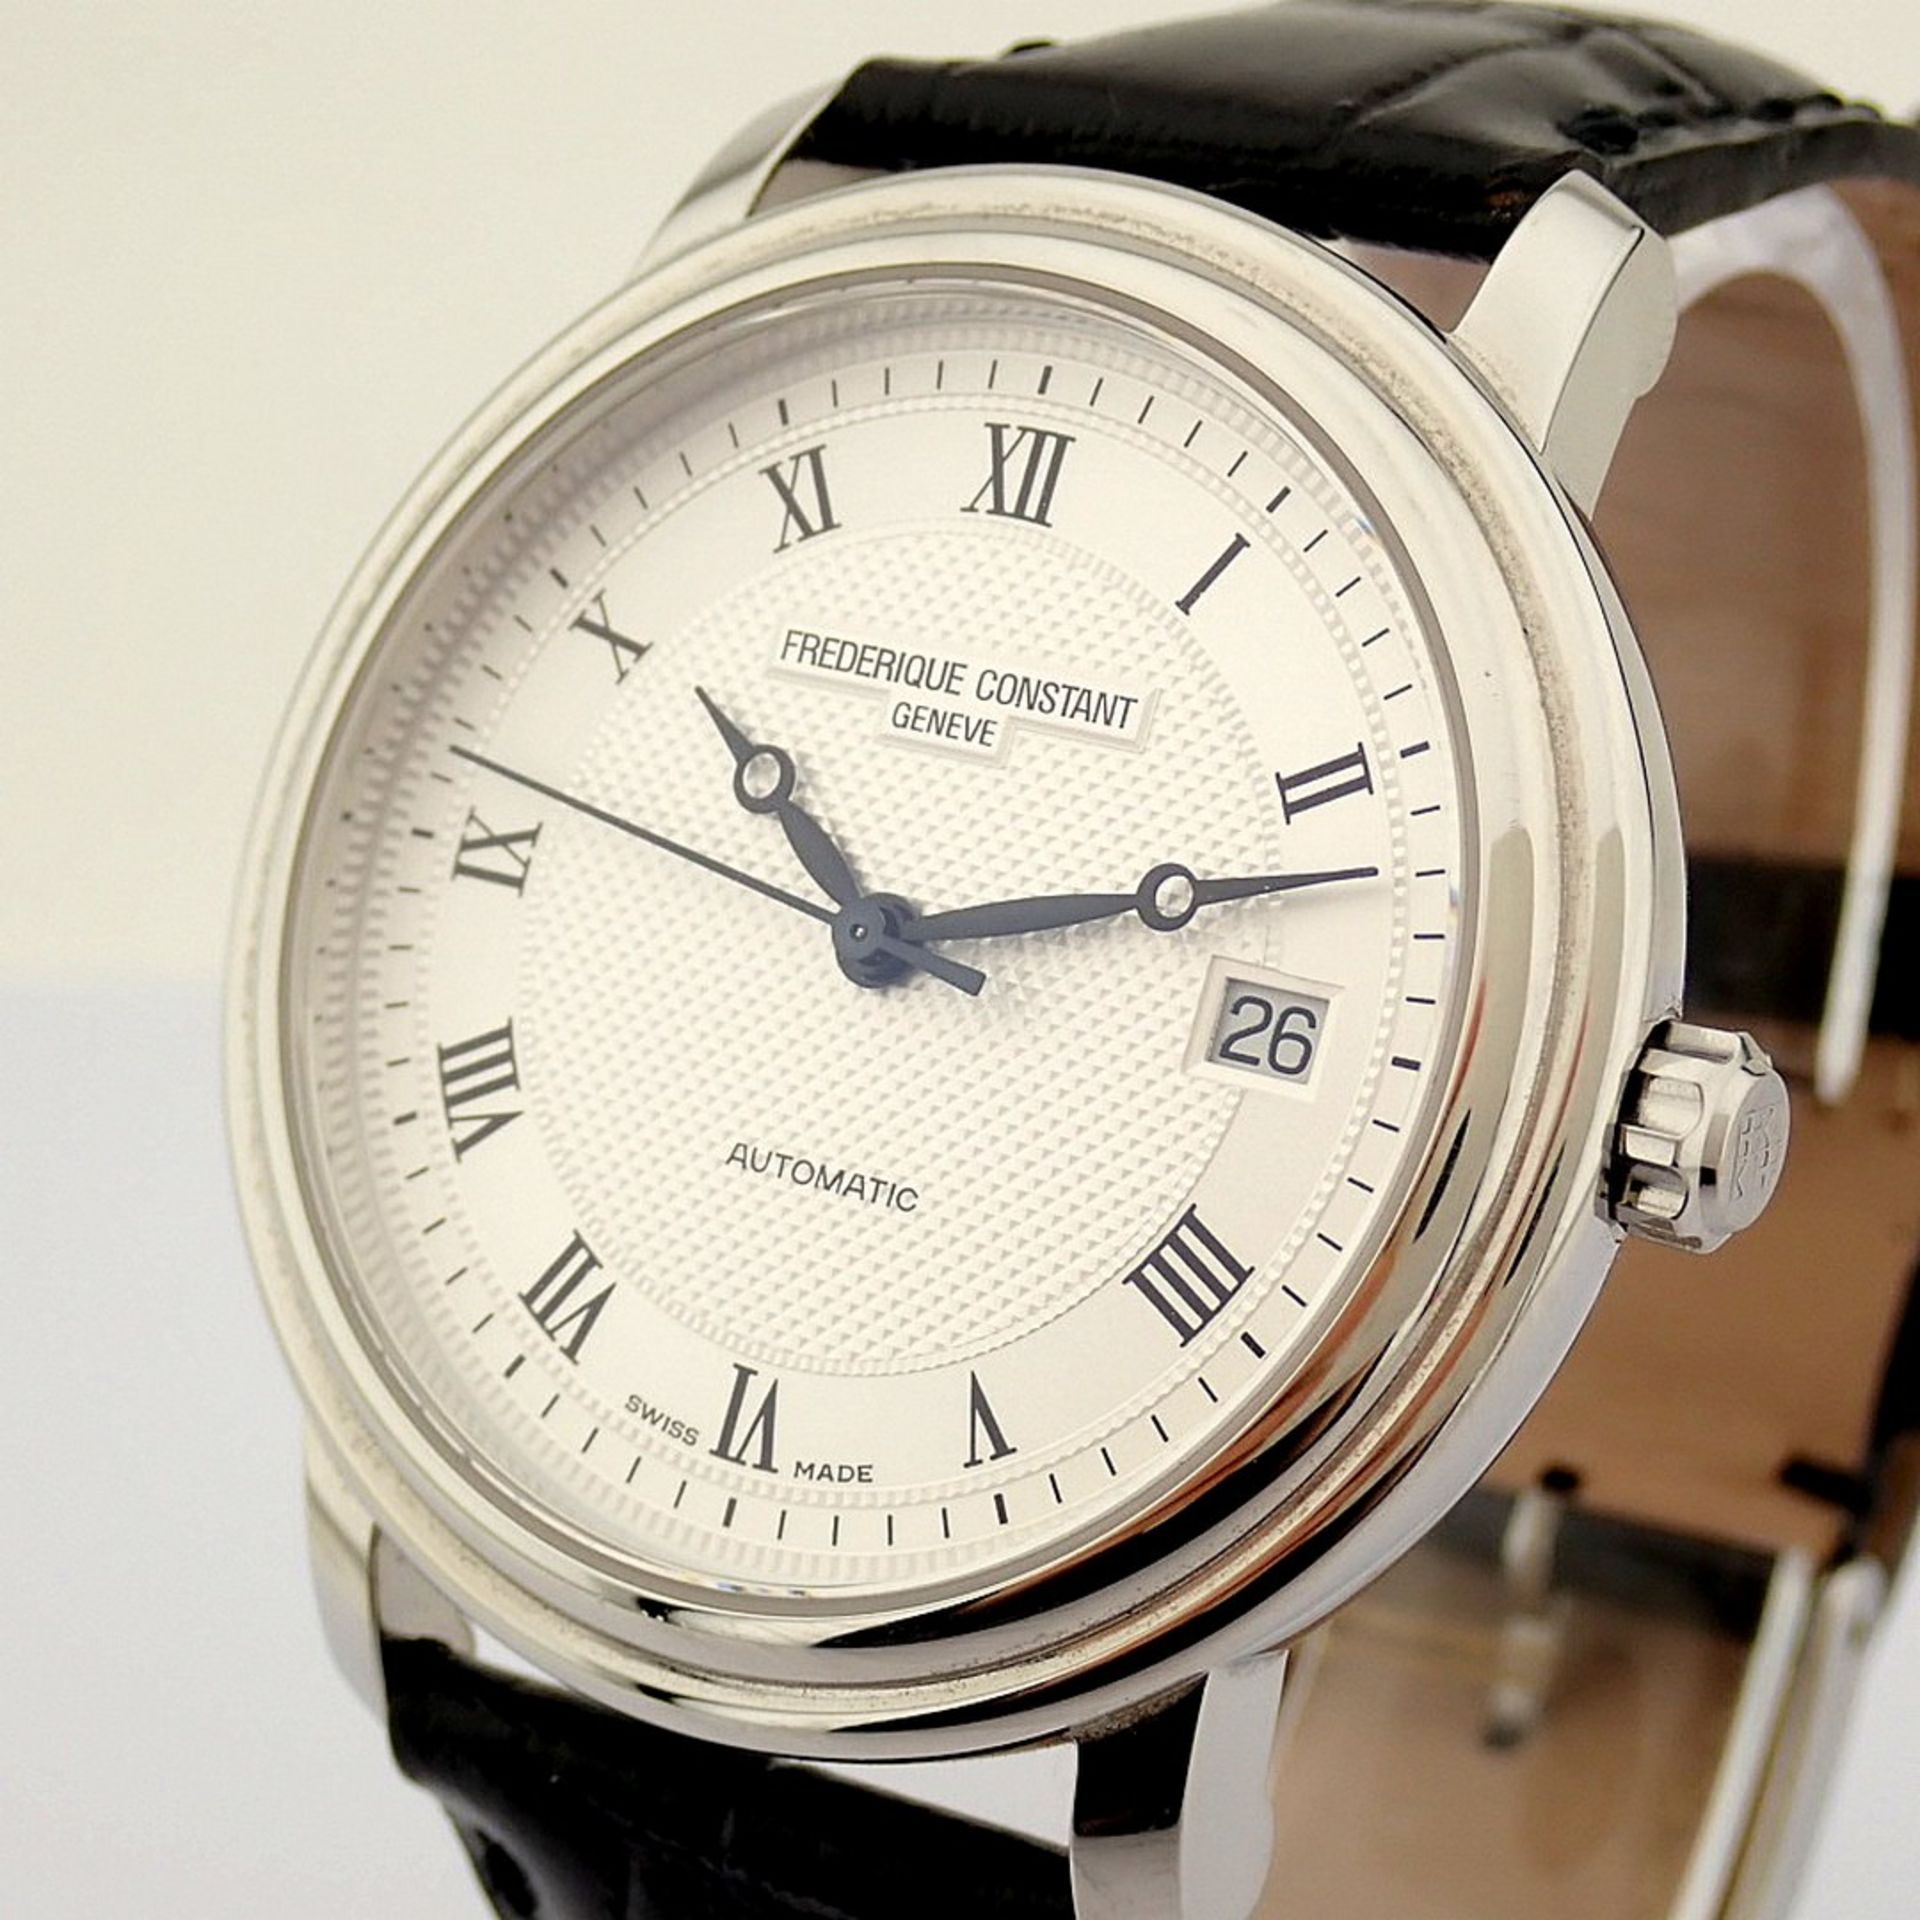 Pierre Balmain / Swiss Chronograph Date - Gentlmen's Steel Wrist Watch - Image 7 of 7